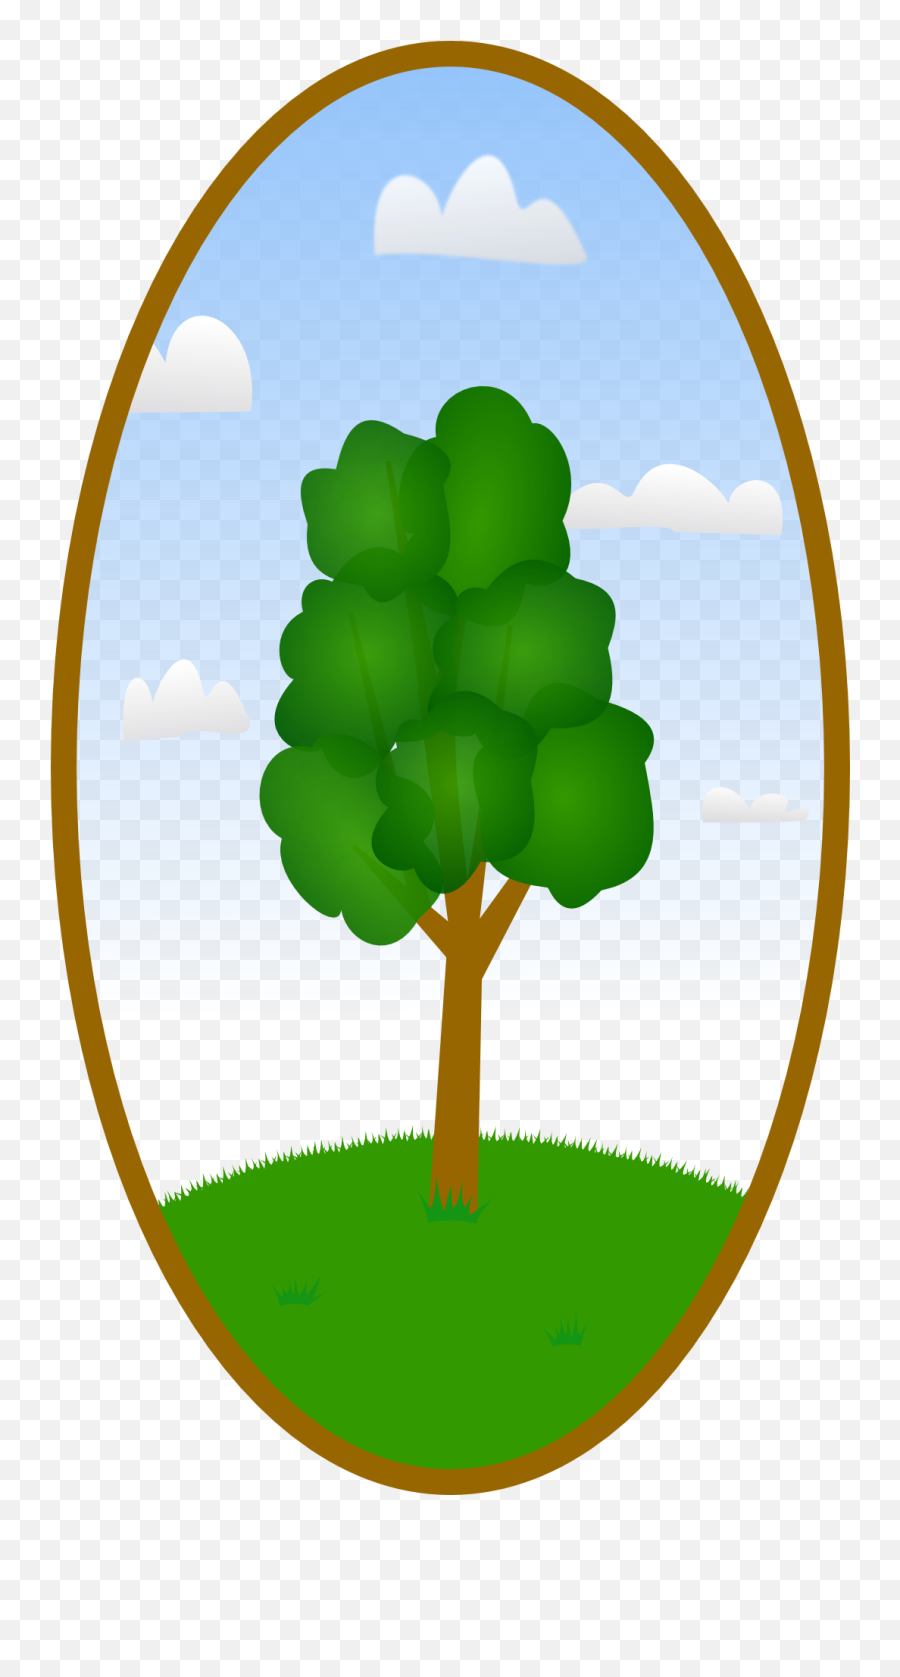 Landscape Oval Drawing - Imagenes En Forma Ovalada Emoji,Oval Png